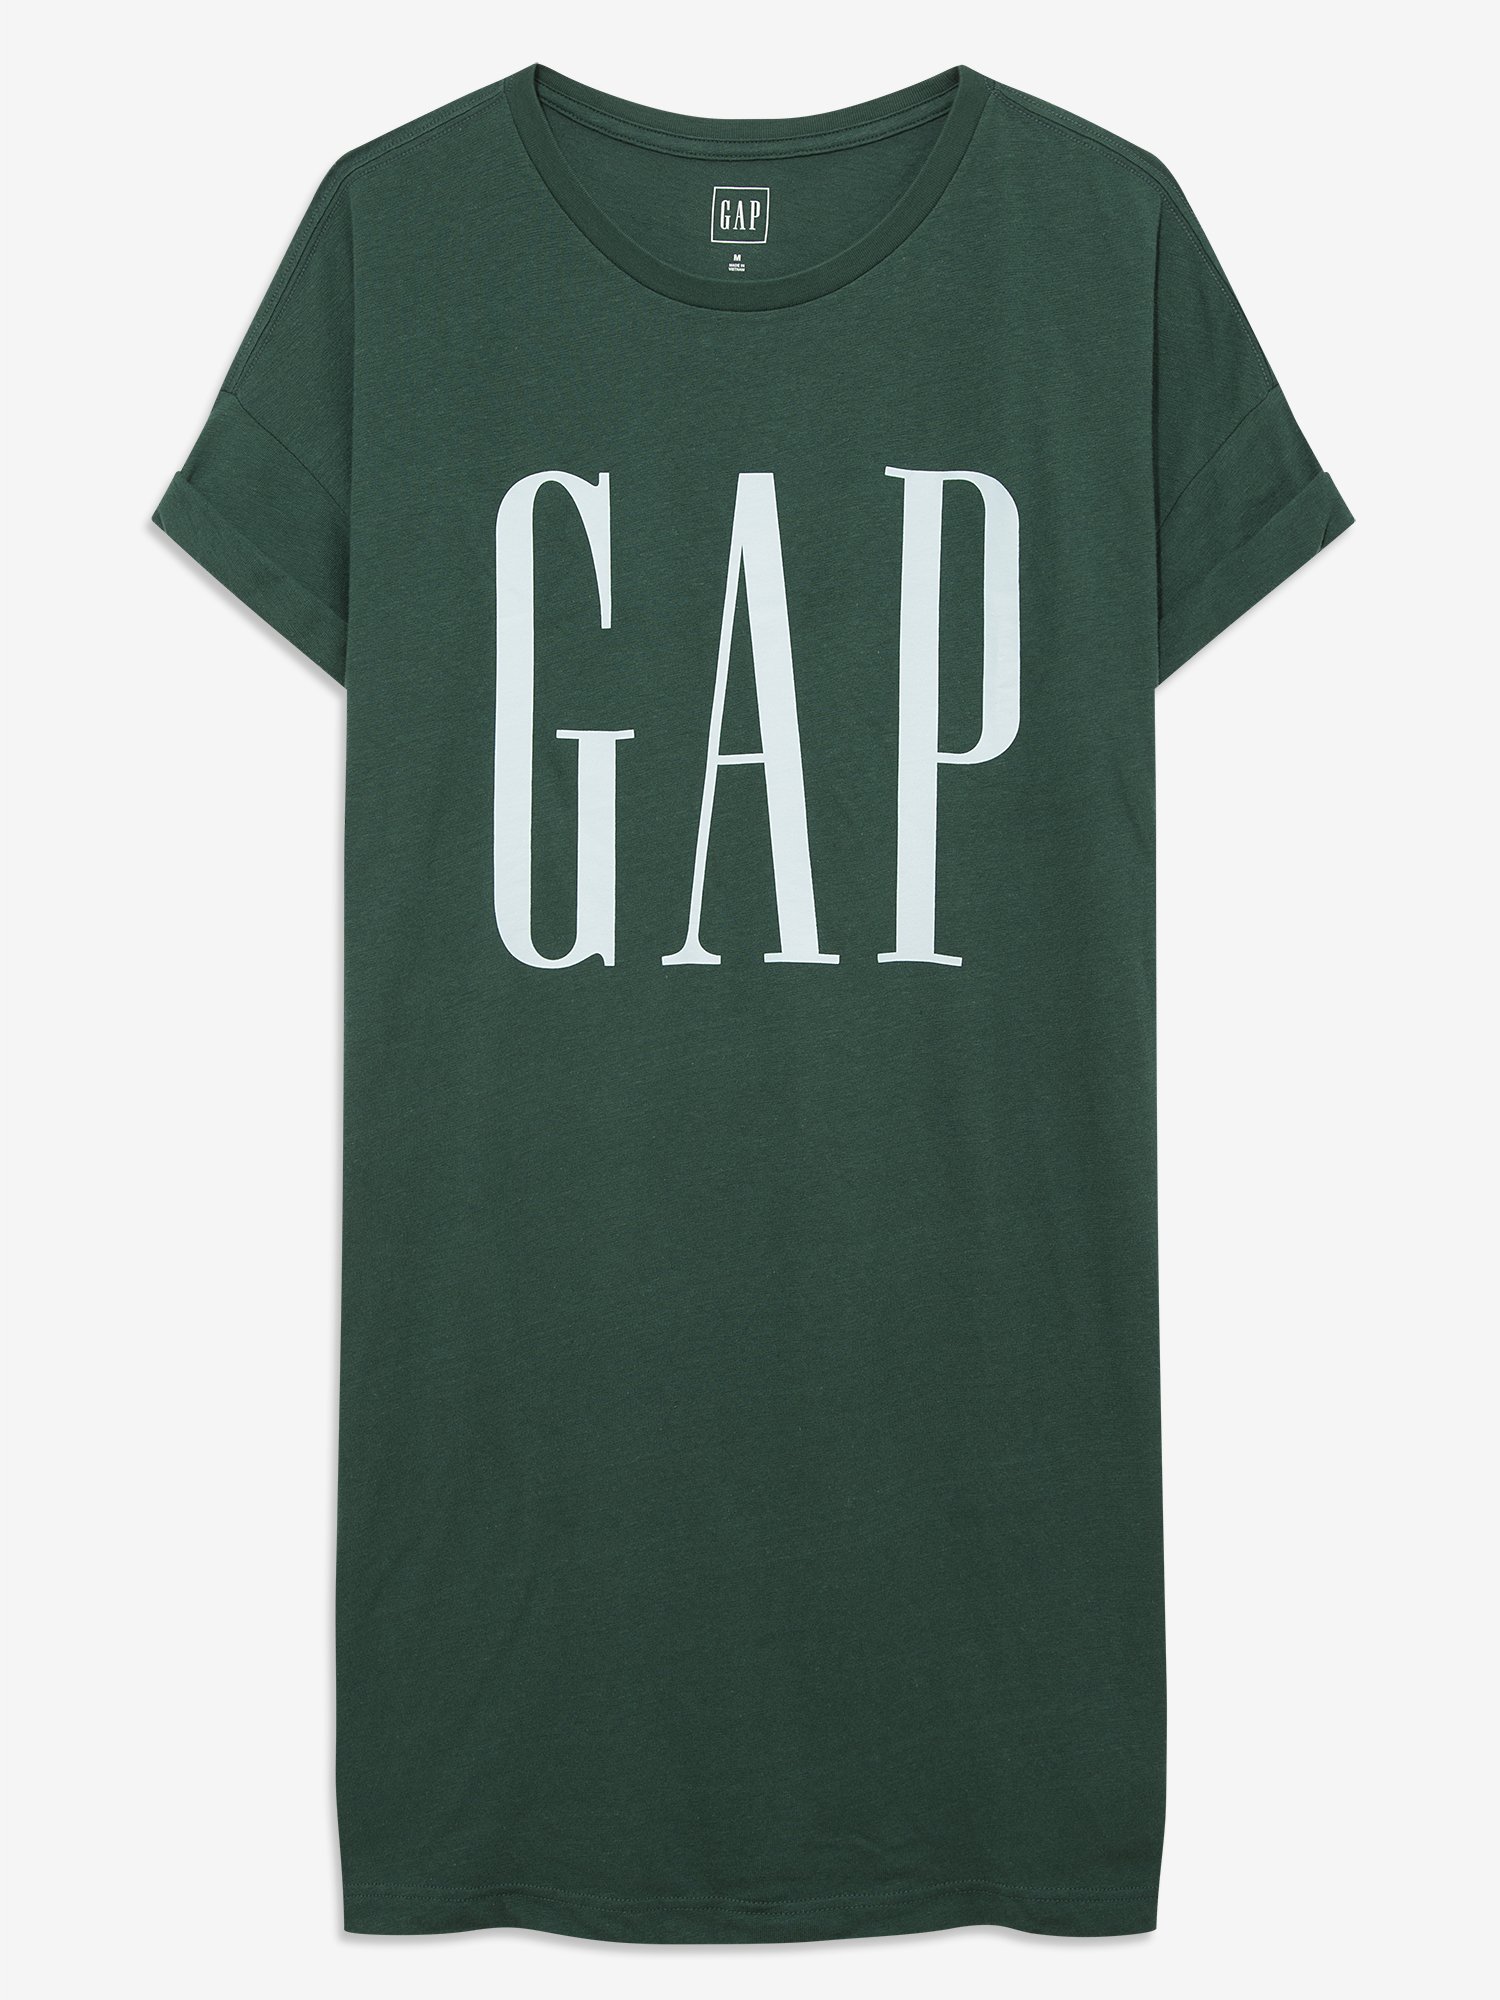 Gap Logo T-Shirt Elbise product image